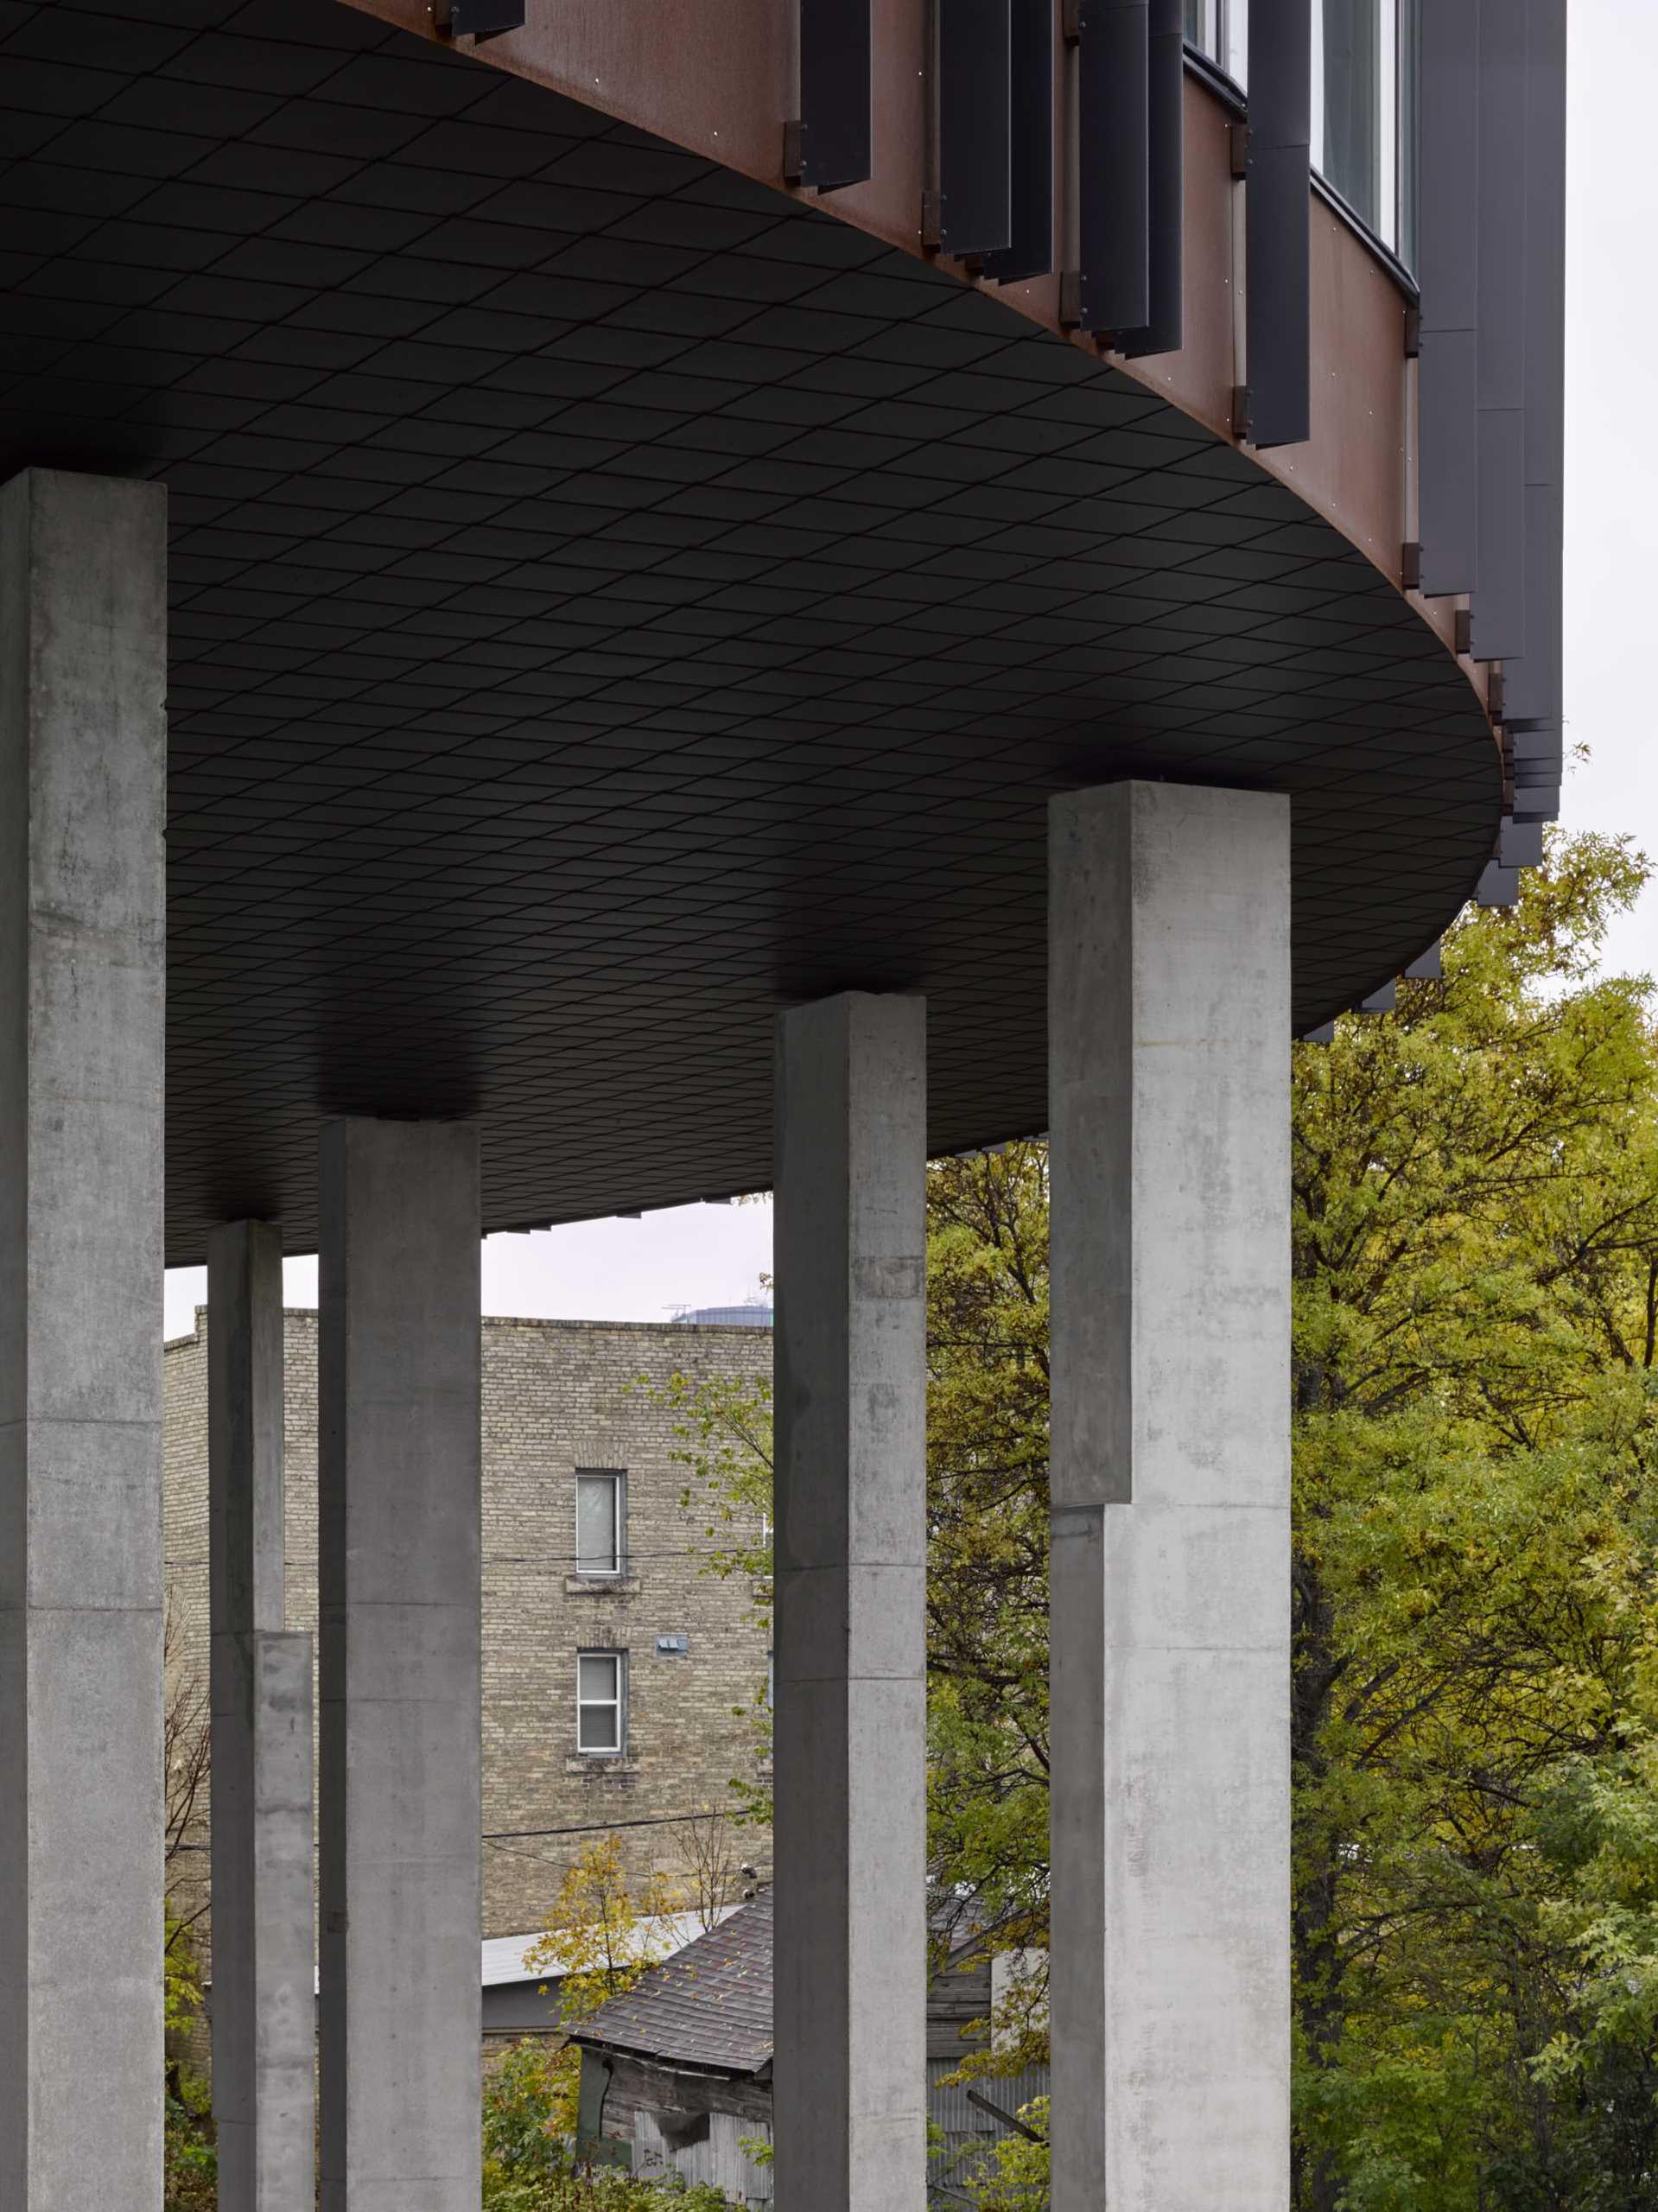 20 concrete columns support a round apartment building.